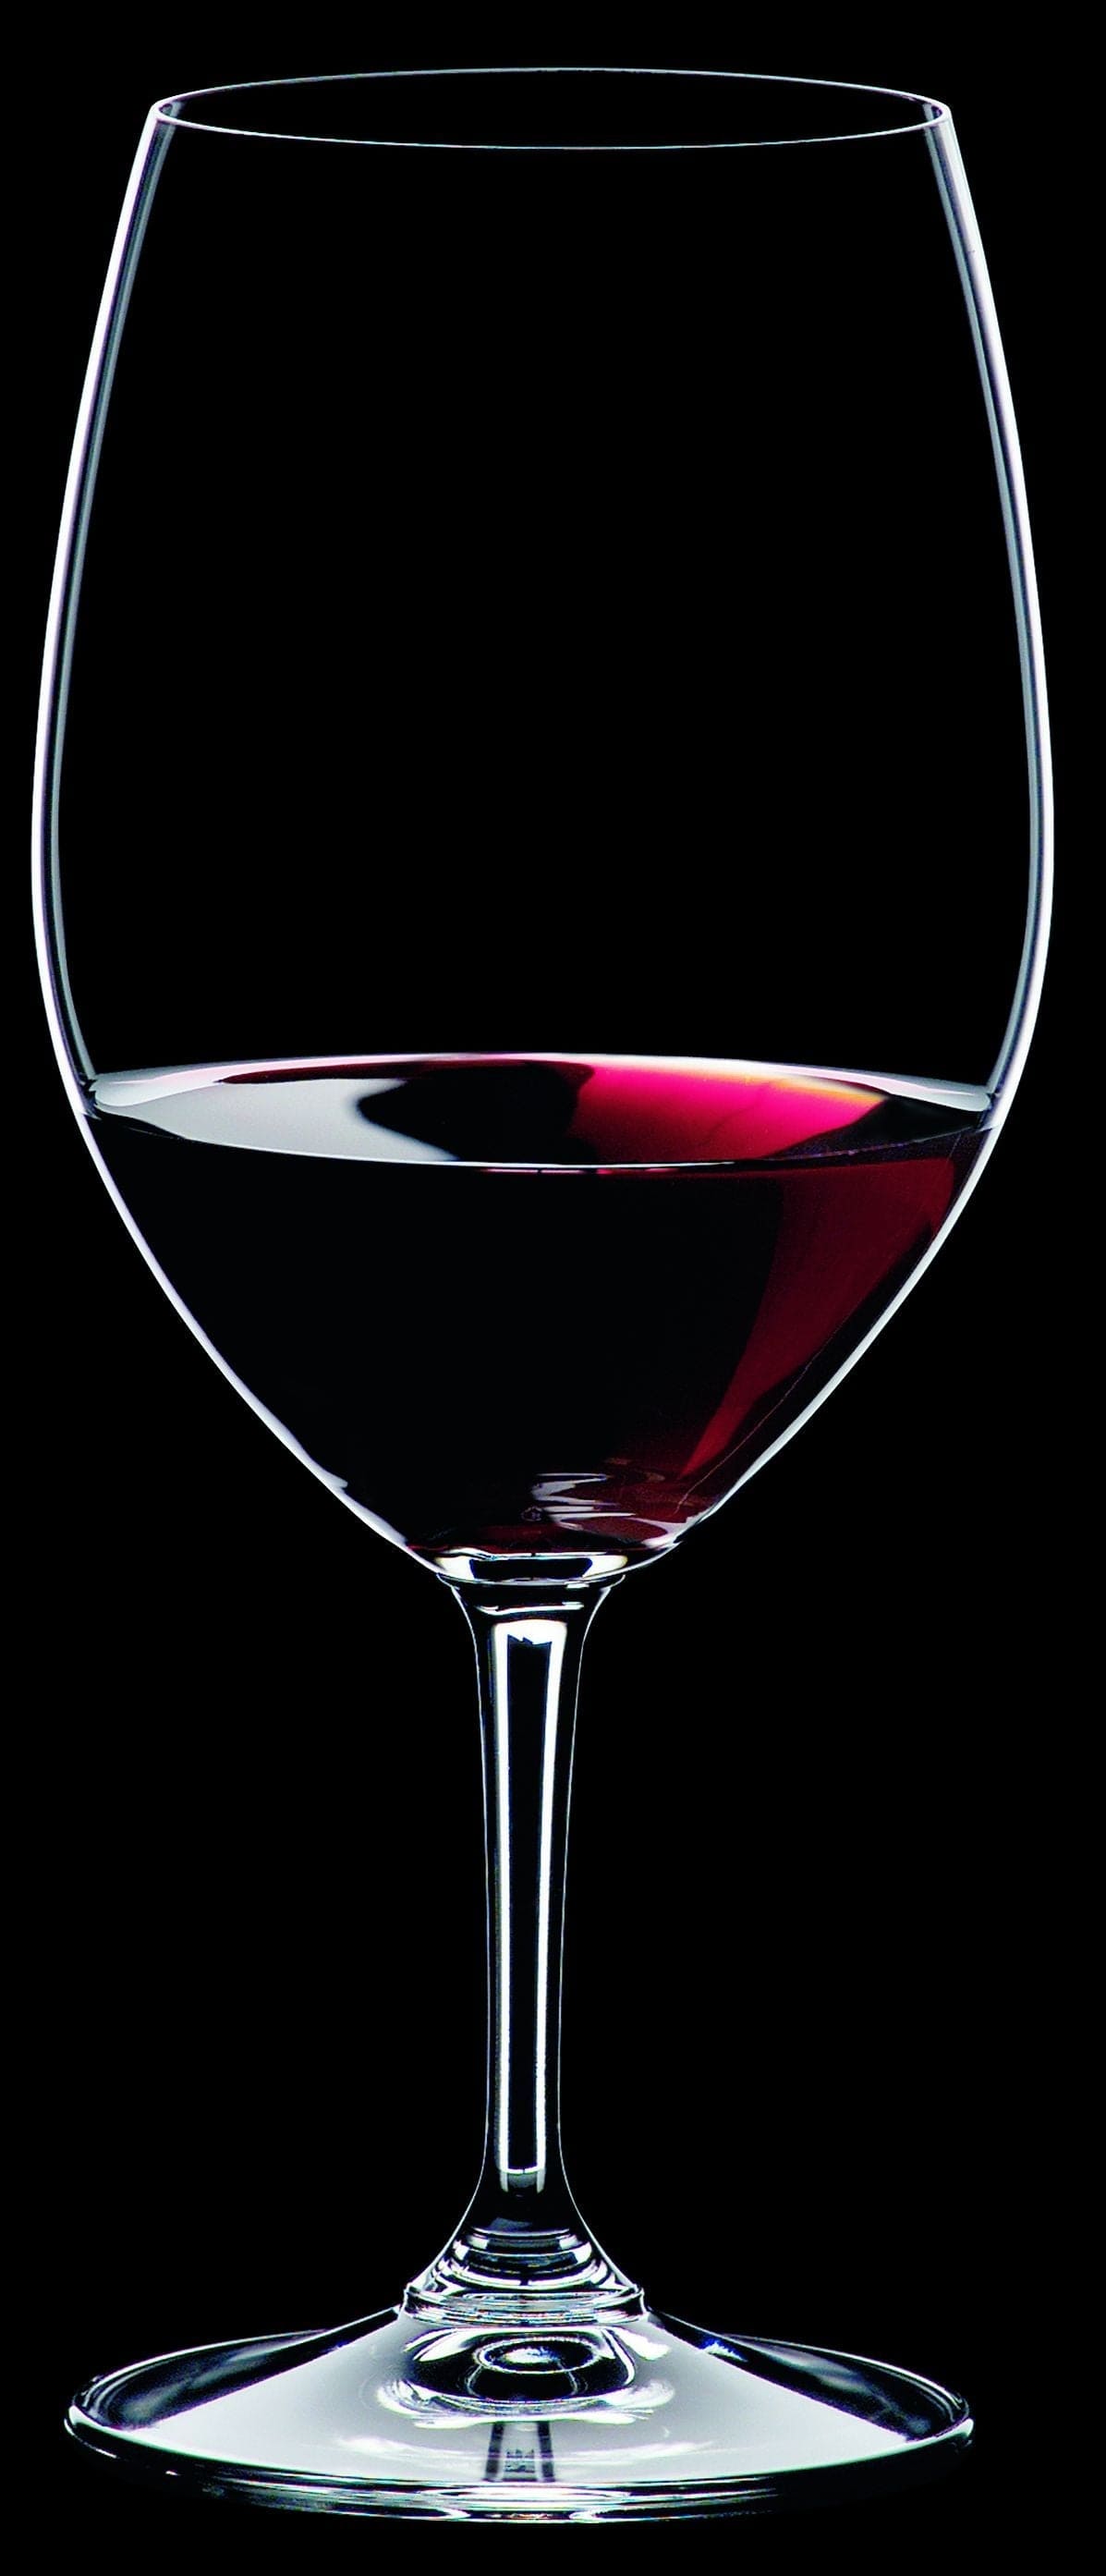 Nachtmann Vi vino wit wijnglas 370 ml, set van 4